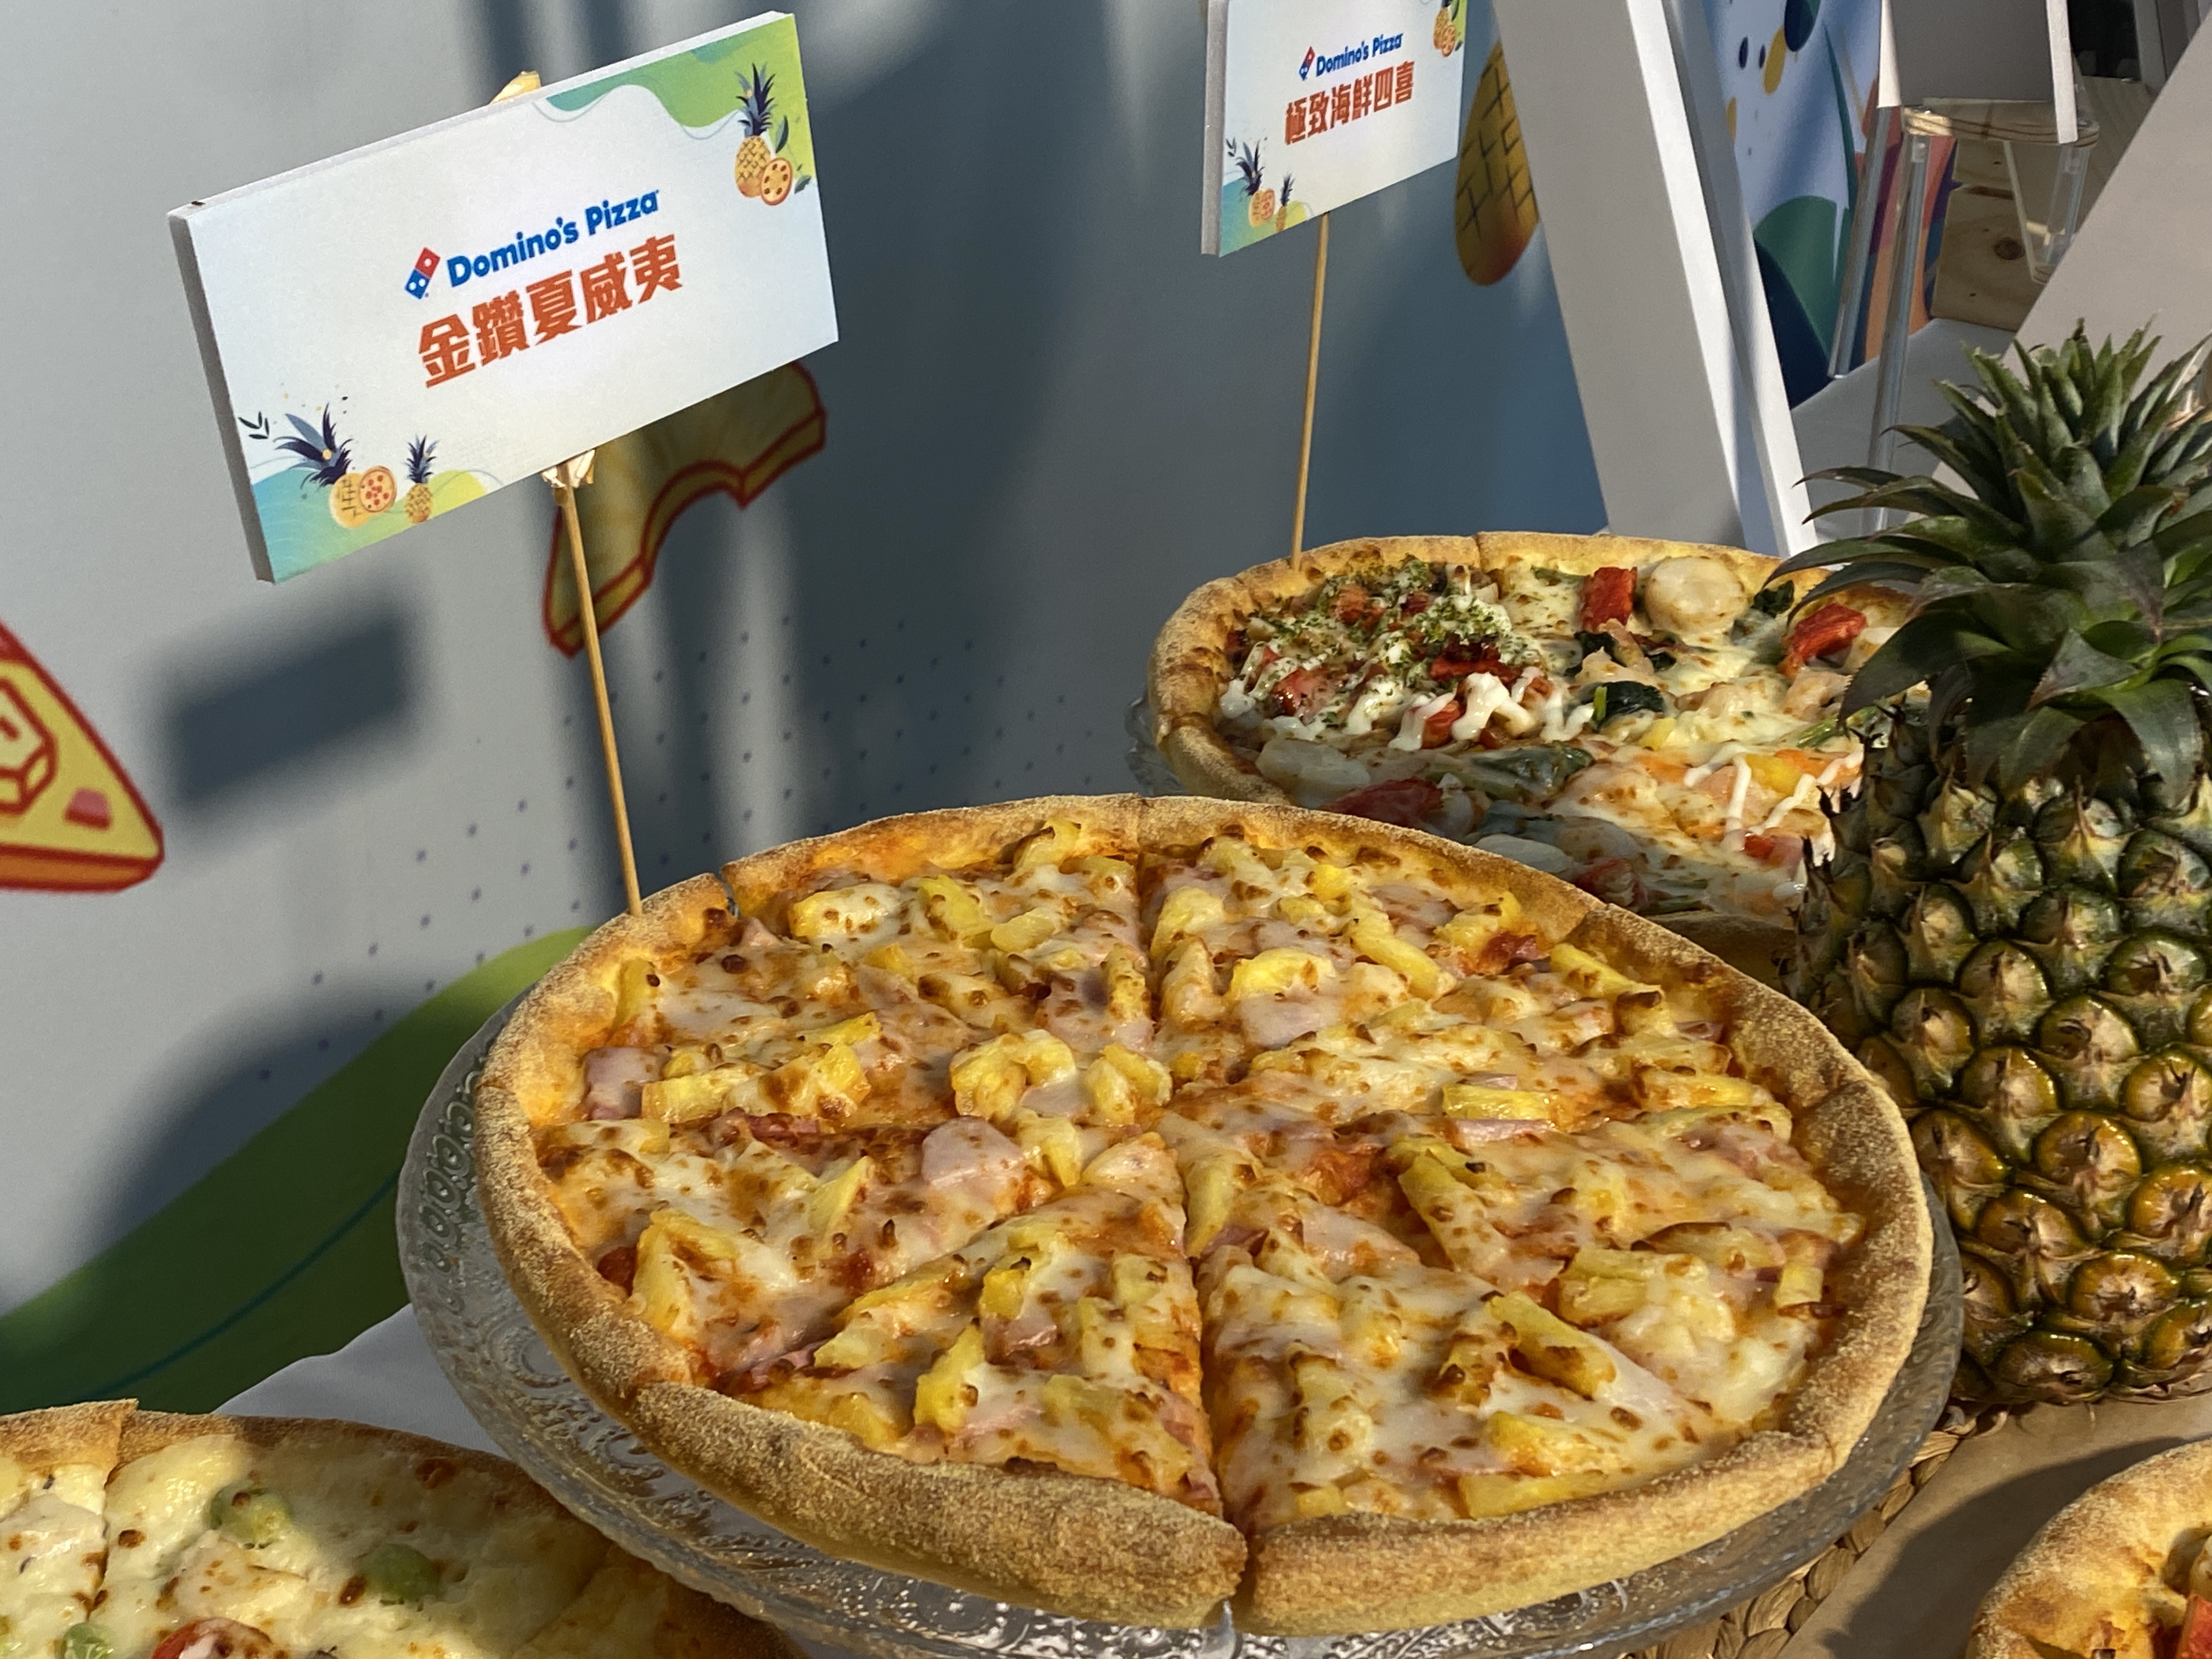 披萨连锁业者达美乐宣布，夏威夷口味披萨将采用台农17号的金钻凤梨。记者李柏澔／摄影